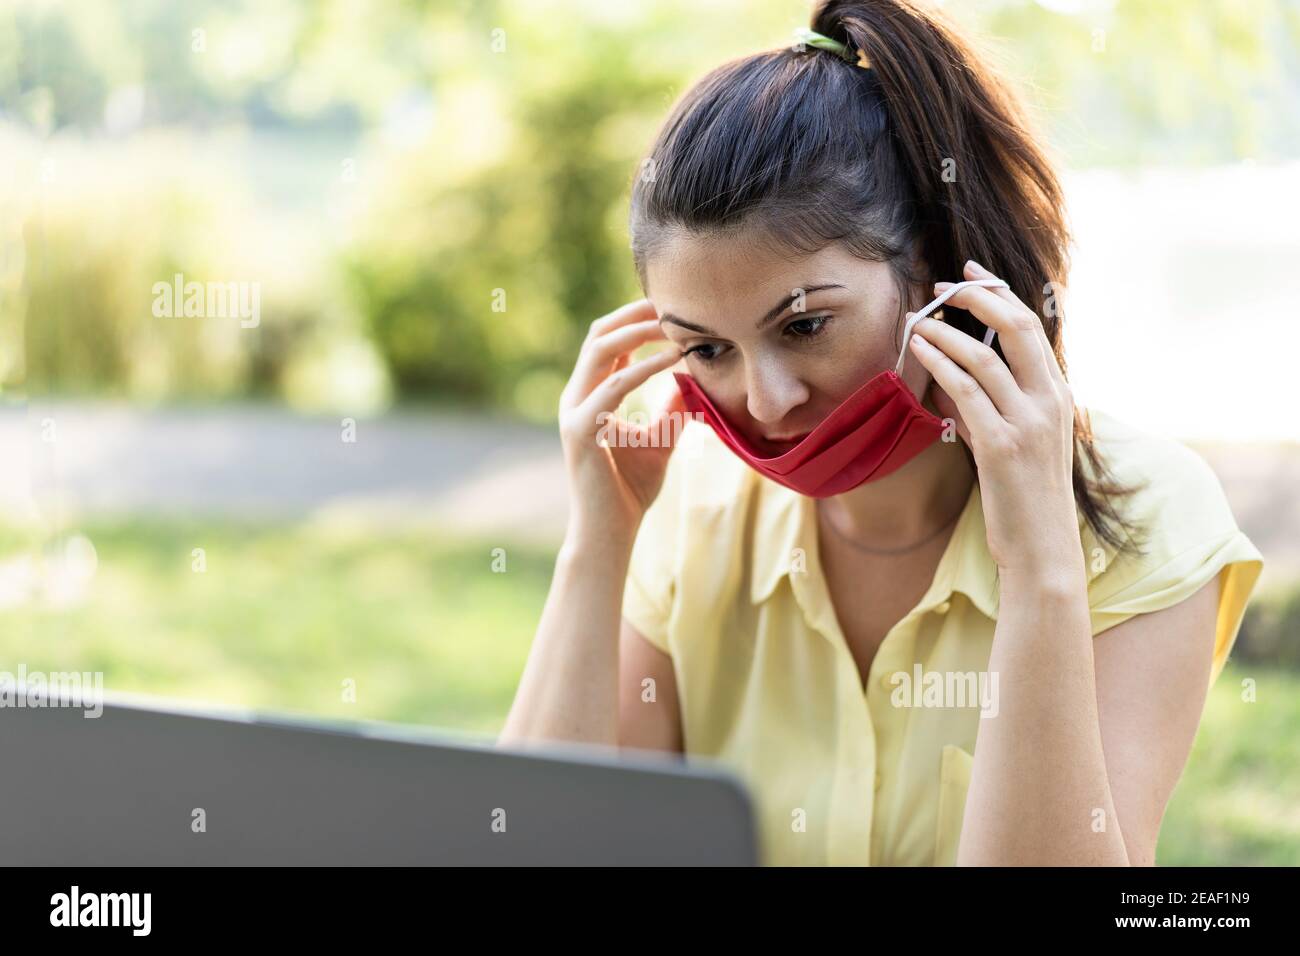 Jeune femme travaillant à l'extérieur avec un ordinateur portable et portant un visage rouge Masque pendant le temps du coronavirus - femme utilisant un masque de protection pour empêcher la propagation de Banque D'Images